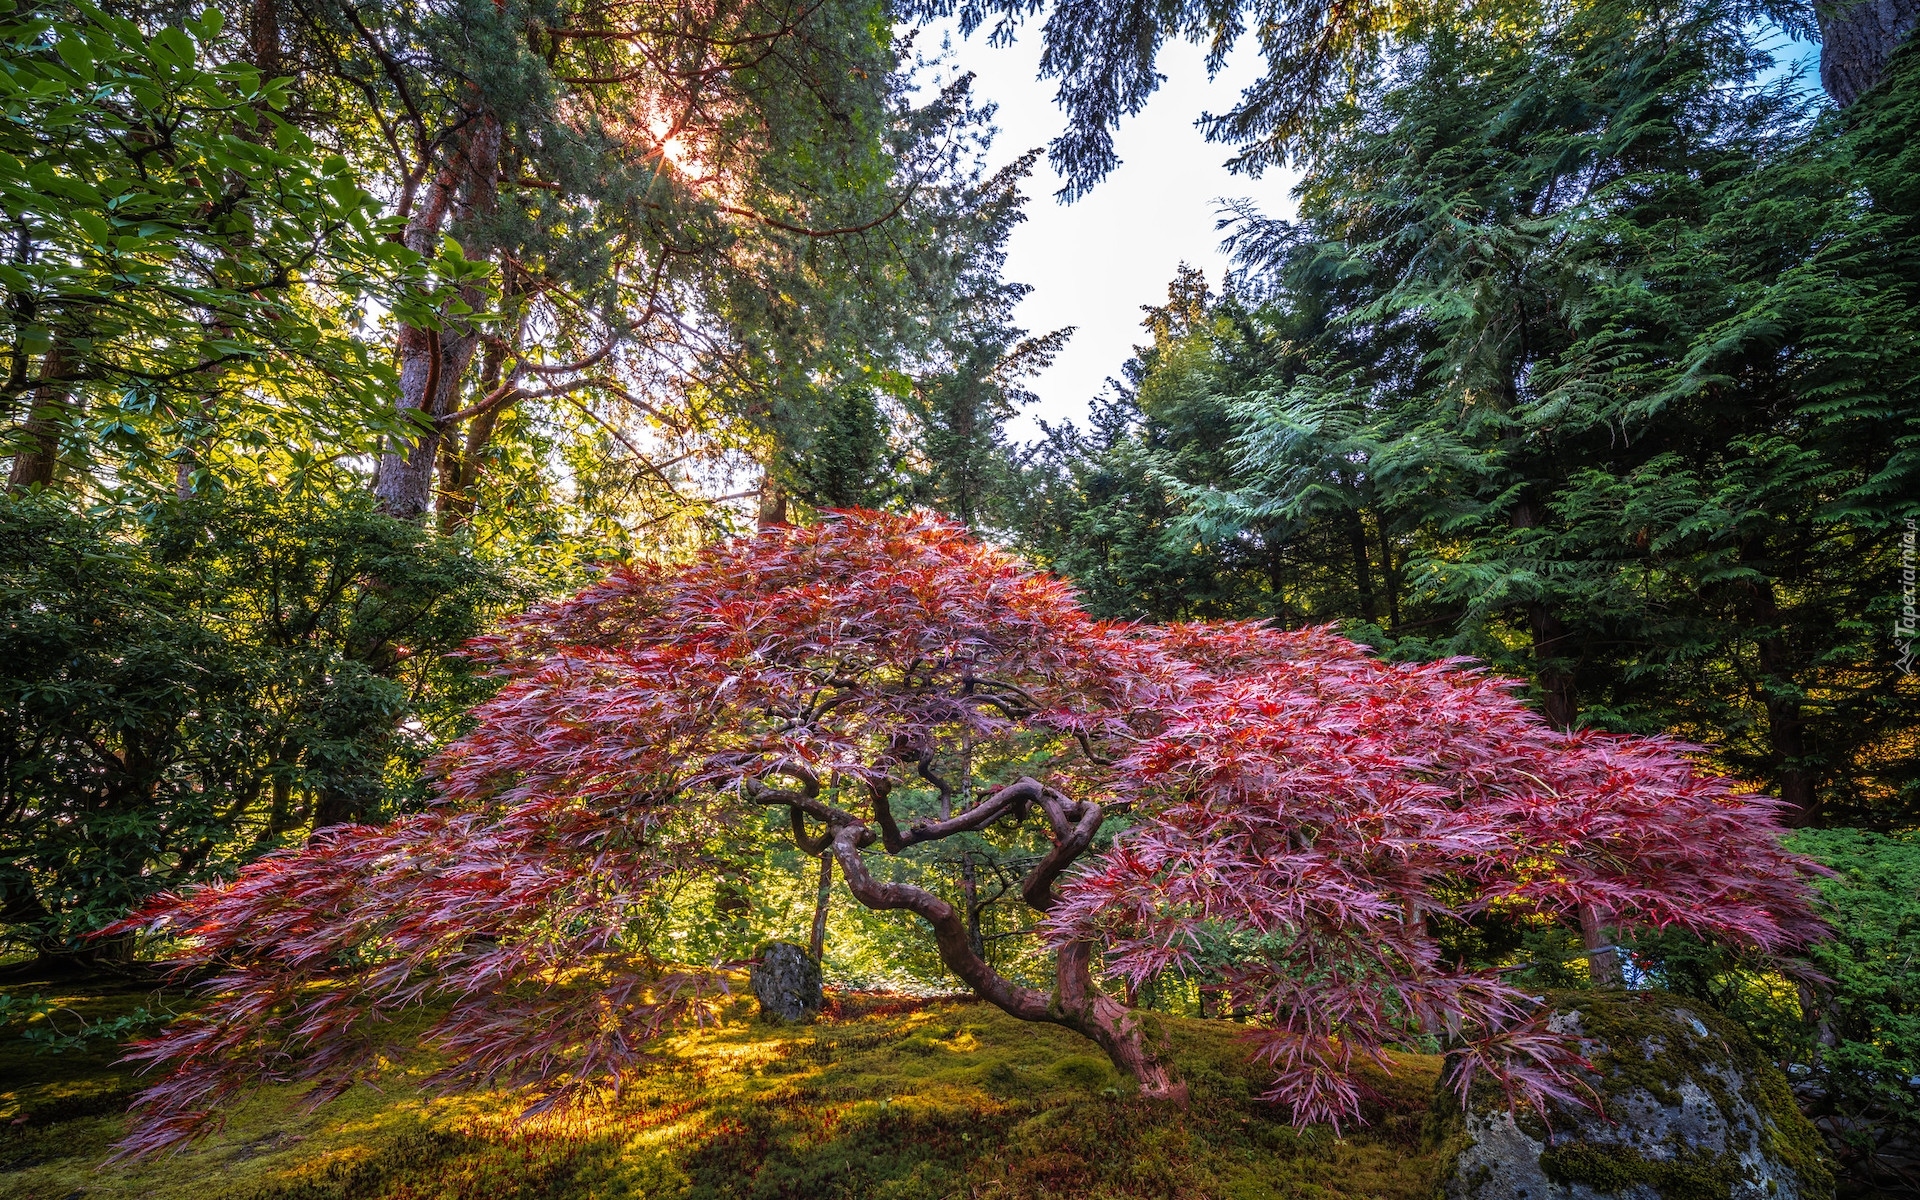 Ogród, Portland Japanese Garden, Drzewo, Klon palmowy, Promienie słońca, Portland, Stan Oregon, Stany Zjednoczone